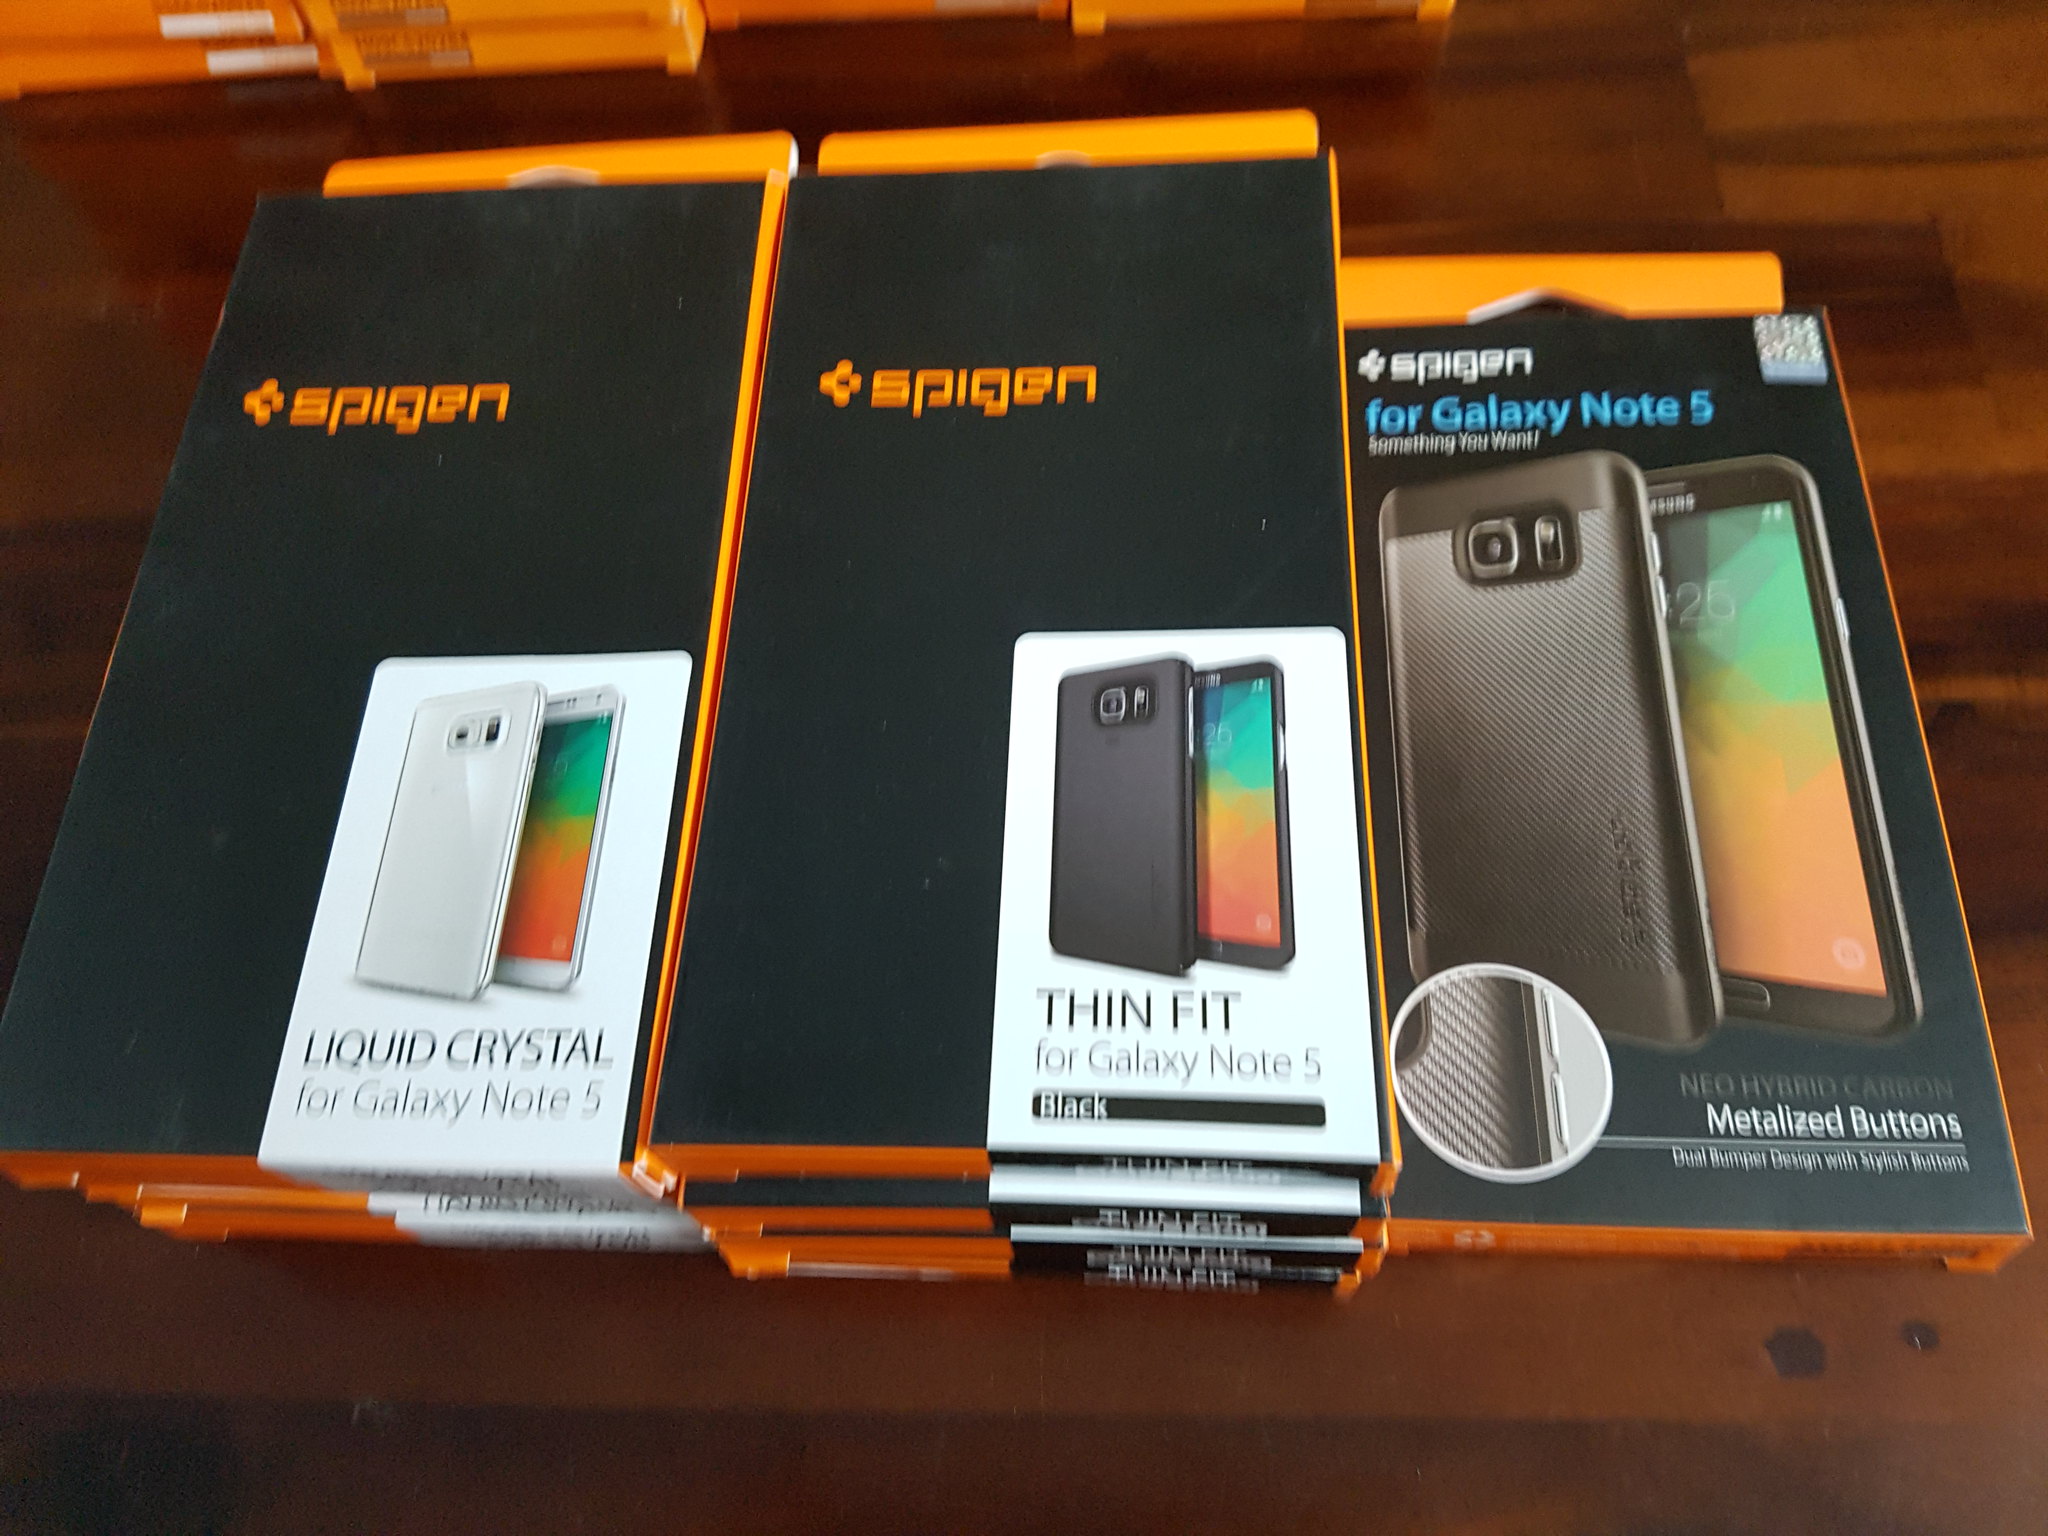 Ốp lưng Spigen iPhone SE,5s,5, S7,S7 Edge, Note5, HTC10, Nexus siêu rẻ chất lượng Mỹ - 11